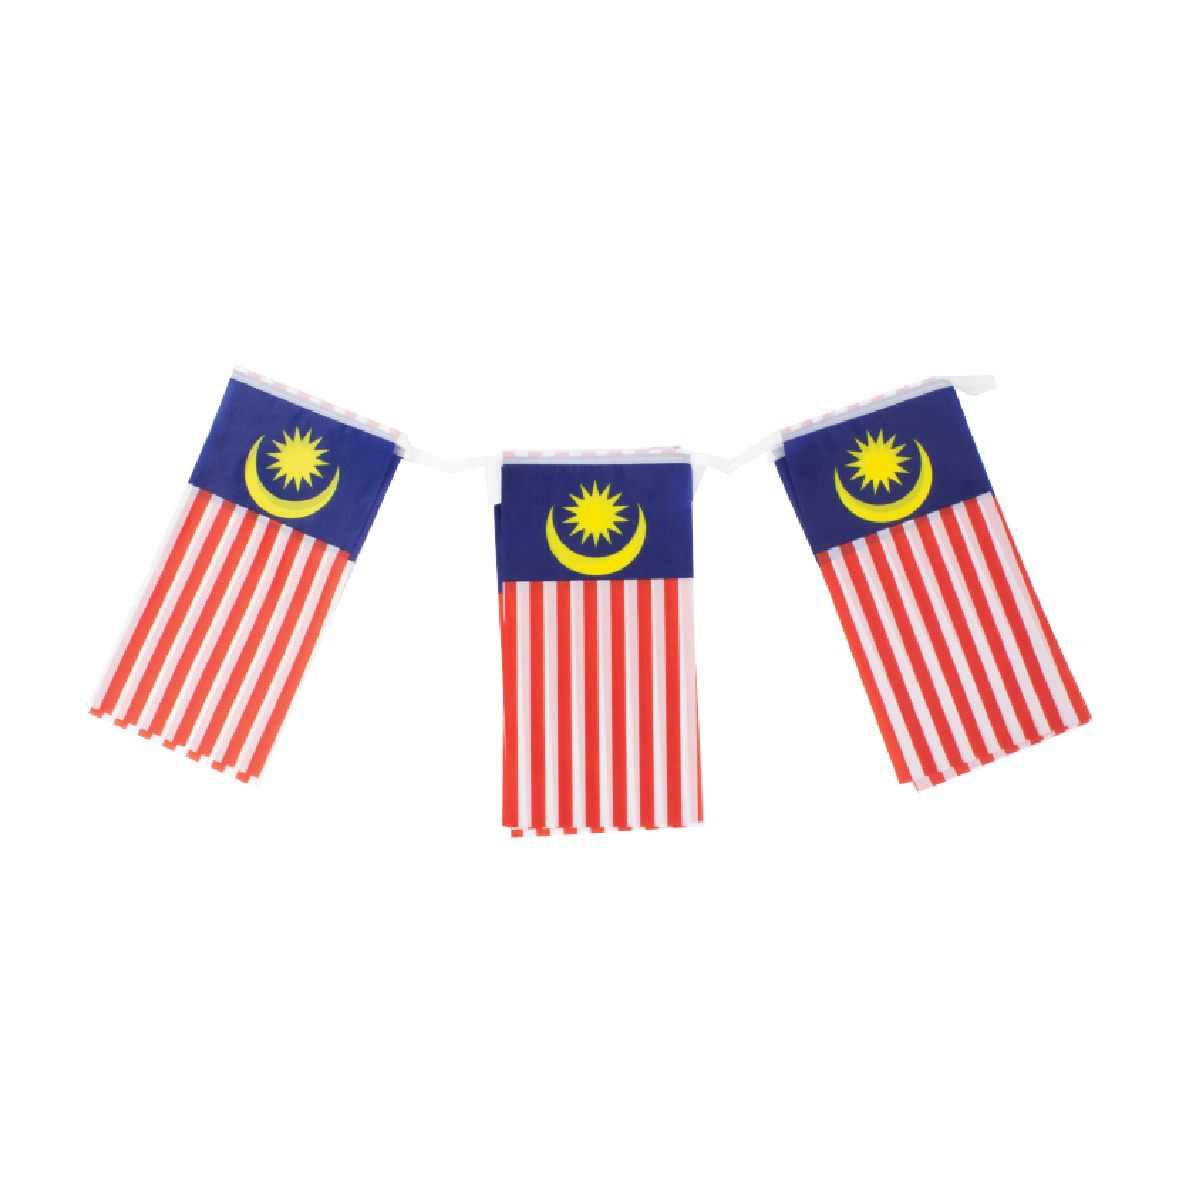 FL12 - ASTAR MALAYSIA BUNTING FLAG